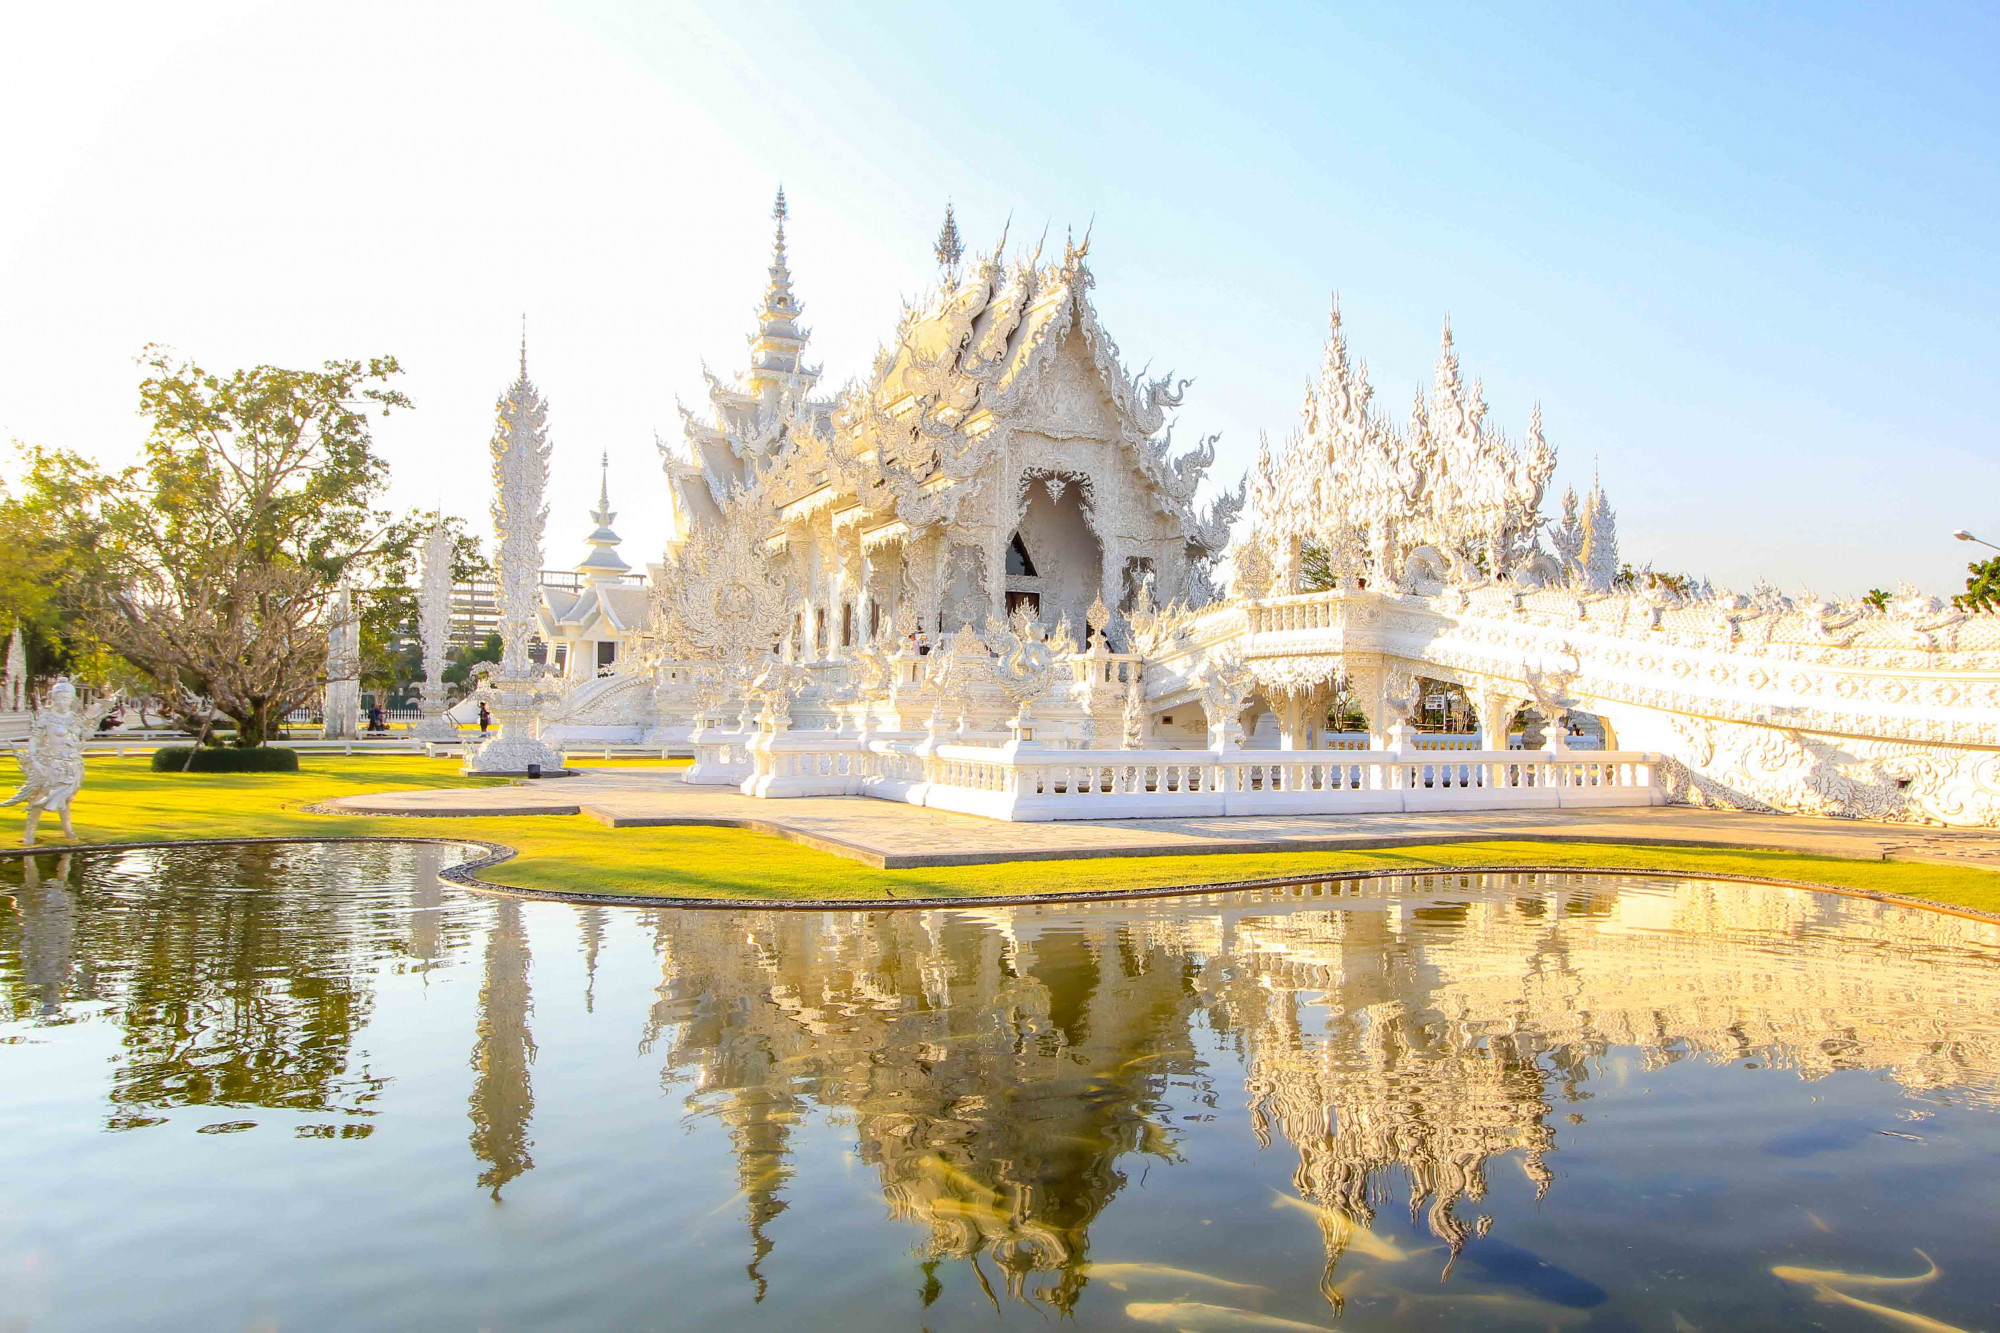 Được nhiều người đánh giá là ngôi chùa đẹp nhất thế giới, chùa Trắng ở Chiang Rai, Thái Lan giống như một tầm nhìn bị đóng băng trong một khung cảnh huyền ảo. Ngôi đền màu trắng và bạc được nghệ sĩ địa phương Chalermchai Kositpipat thiết kế để tôn vinh quê hương của ông và mở cửa cho công chúng vào năm 1997. Kositpipat đã tự mình tài trợ phần lớn công việc và tham vọng lớn hơn của ông là tạo ra cả một khu phức hợp dành riêng cho việc học tập và thiền định. Chương trình xây dựng hoàn chỉnh dự kiến ​​sẽ không hoàn thành cho đến năm 2070.